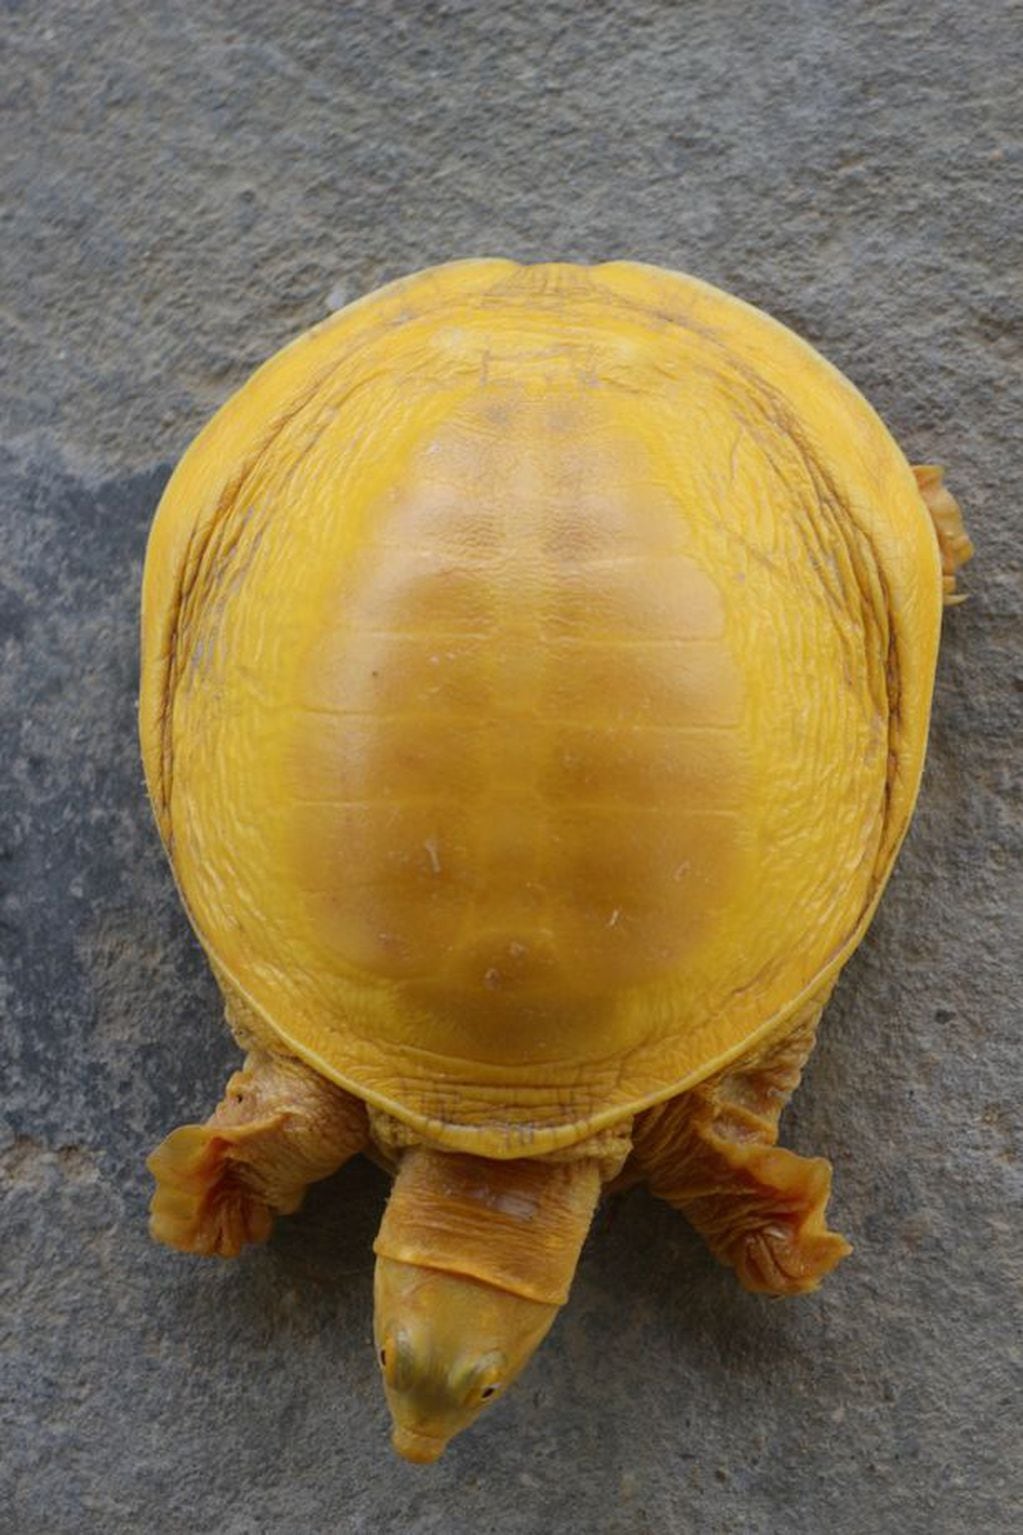 Una tortuga dorada fue descubierta en Nepal y ahora la adoran como reencarnación divina. Foto Mirror.